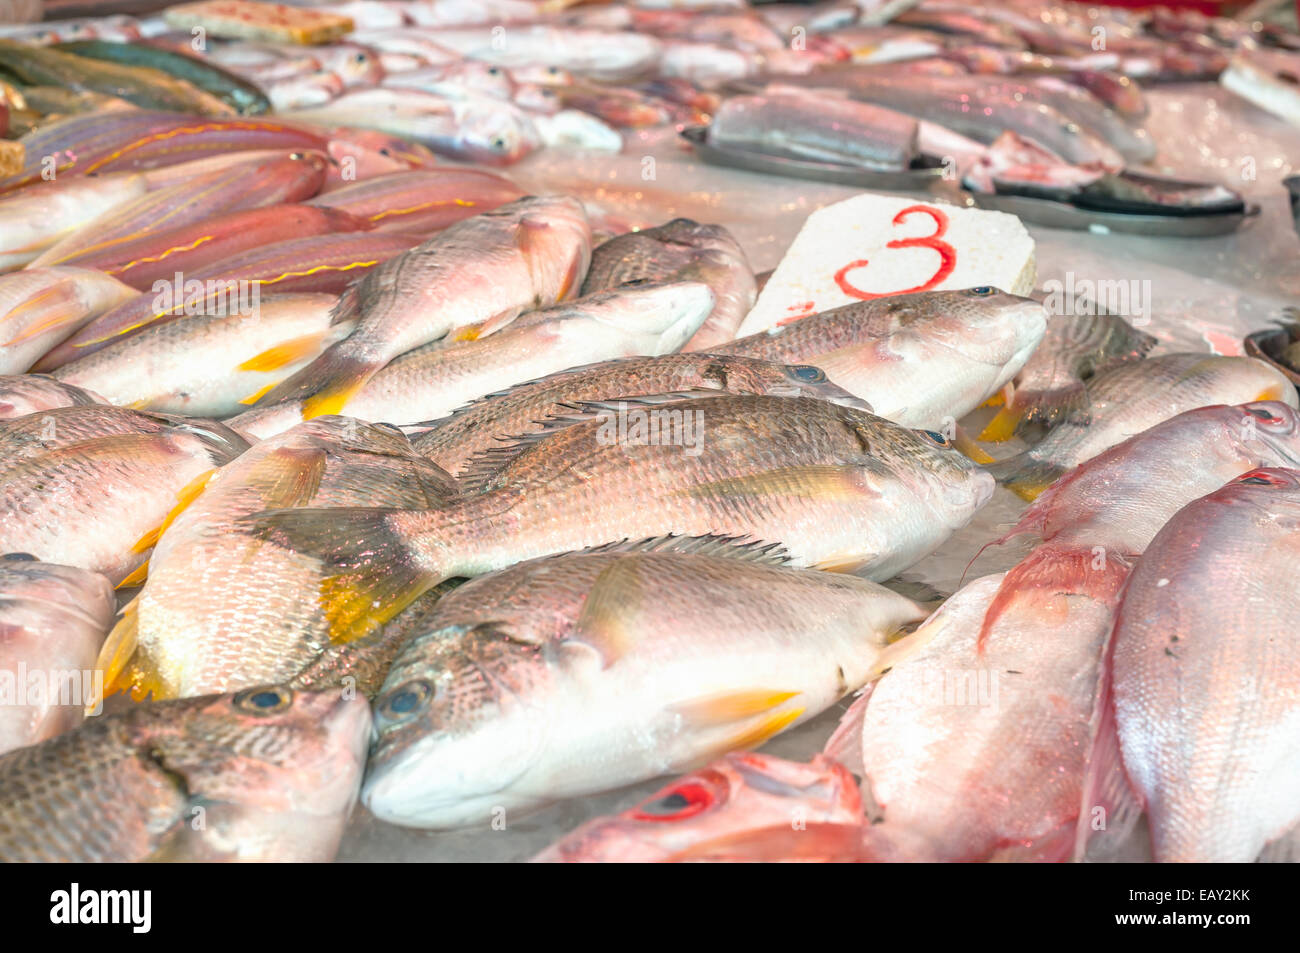 Fresh fish on sale at a Hong Kong wet market Stock Photo